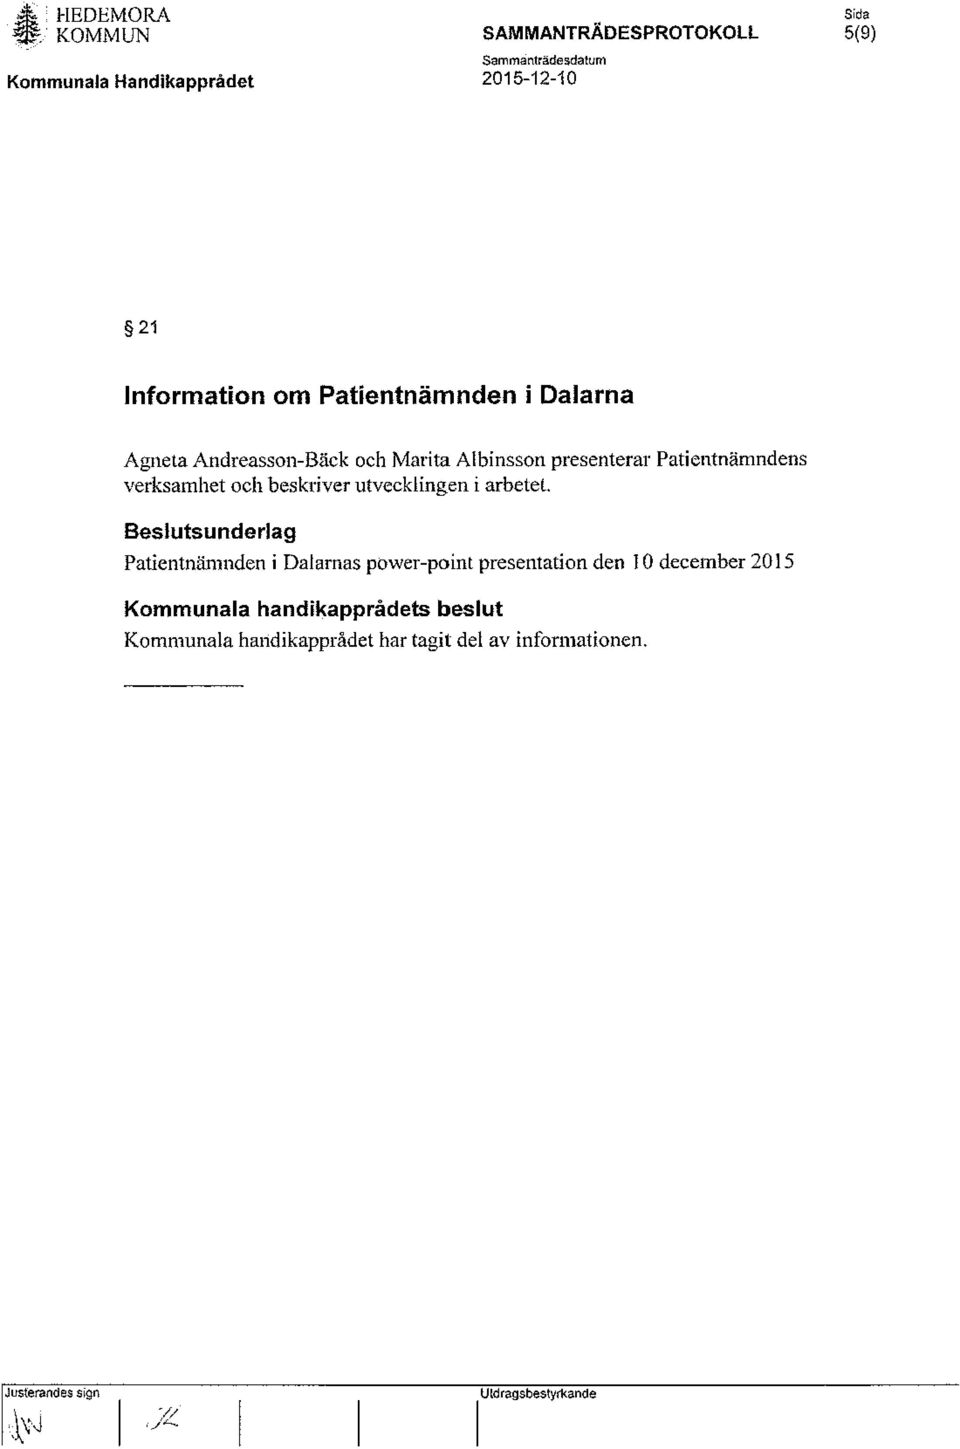 Besluts underlag Patientnämnden i Dalarnas power-point presentation den 10 december 2015